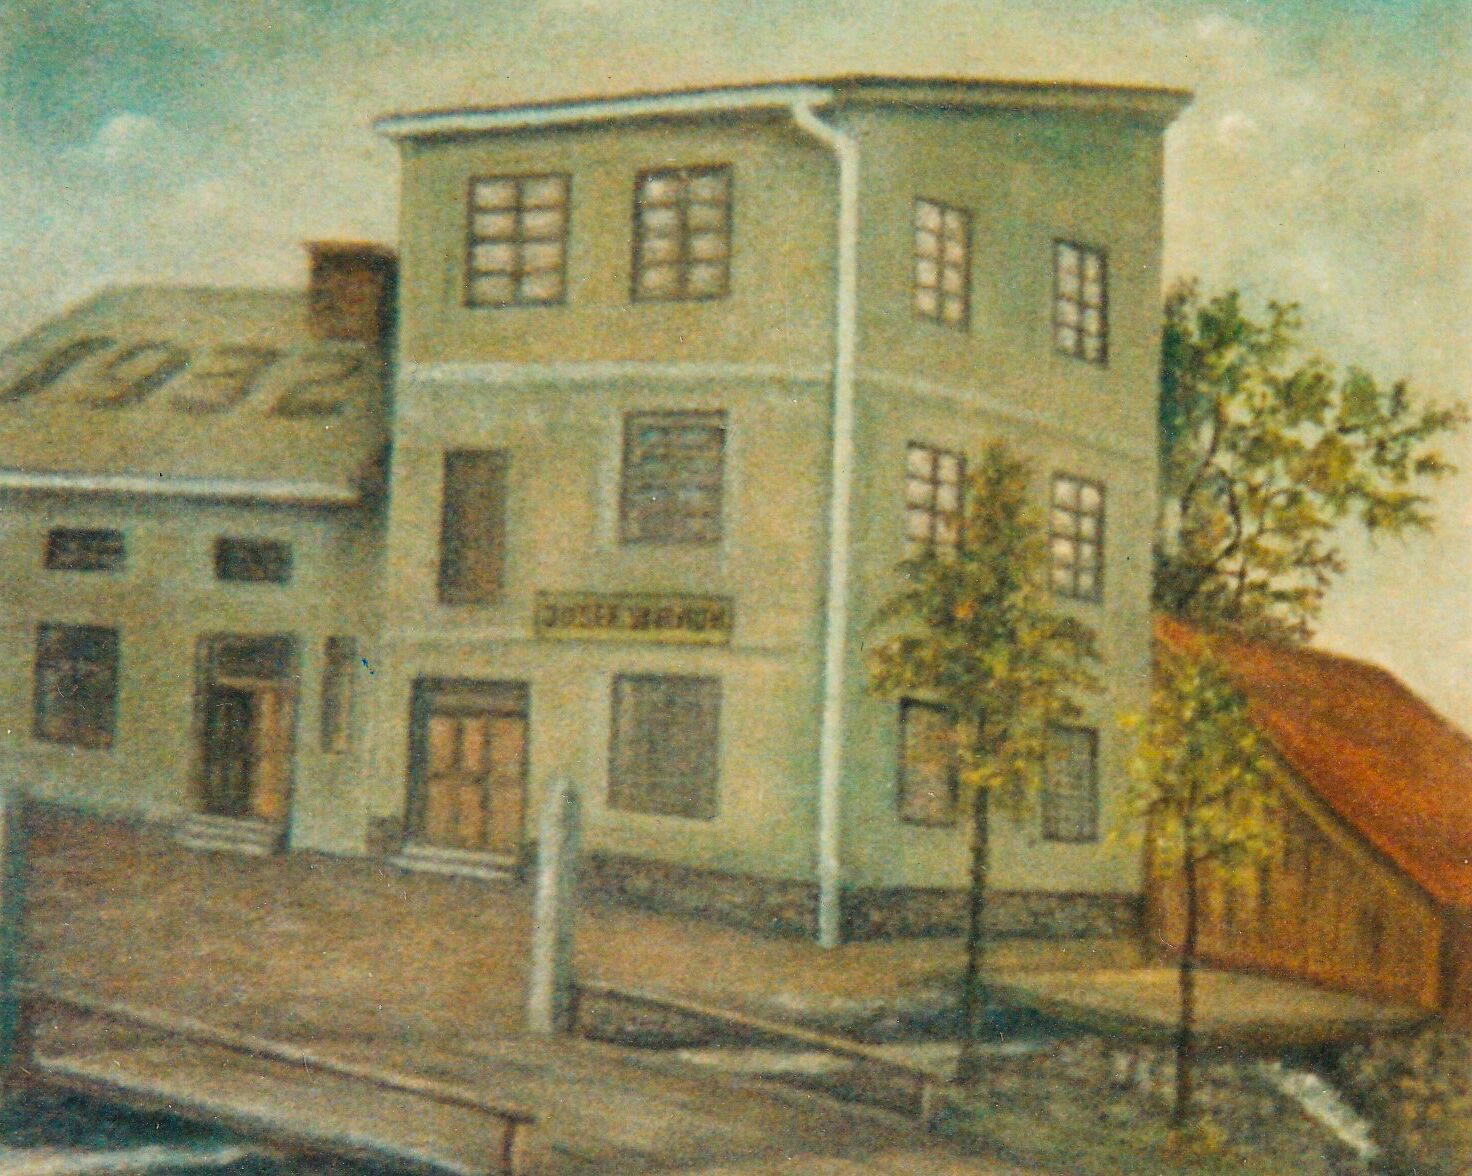 Dům v Hyršově, v němž Anna Fischer strávila dětství